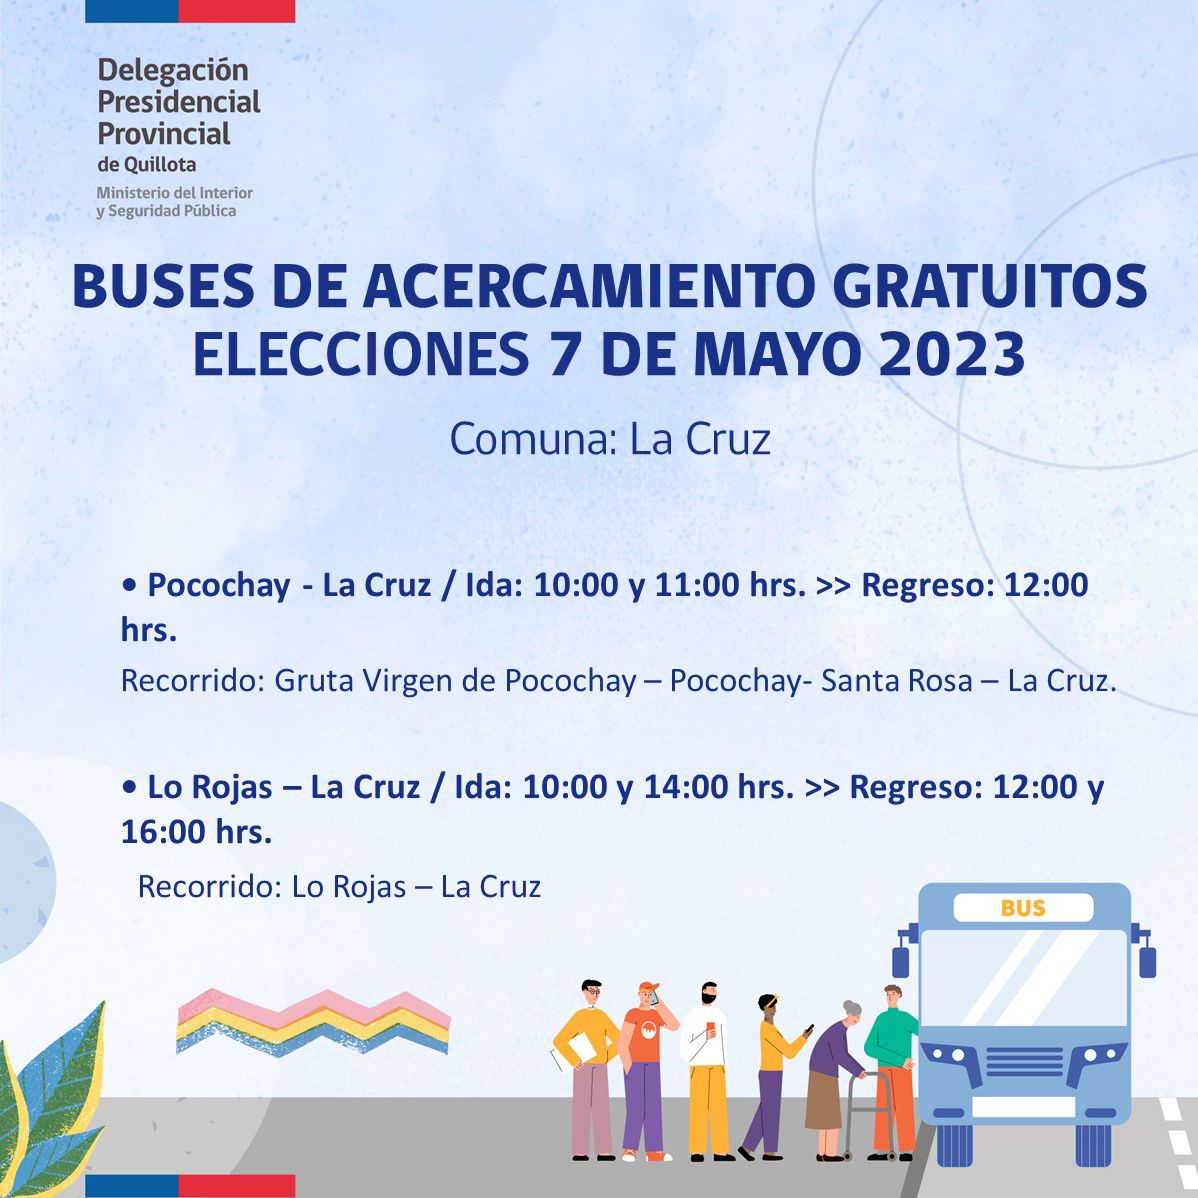 Los recorridos gratuitos de buses para las elecciones de 7 mayo en La Cruz